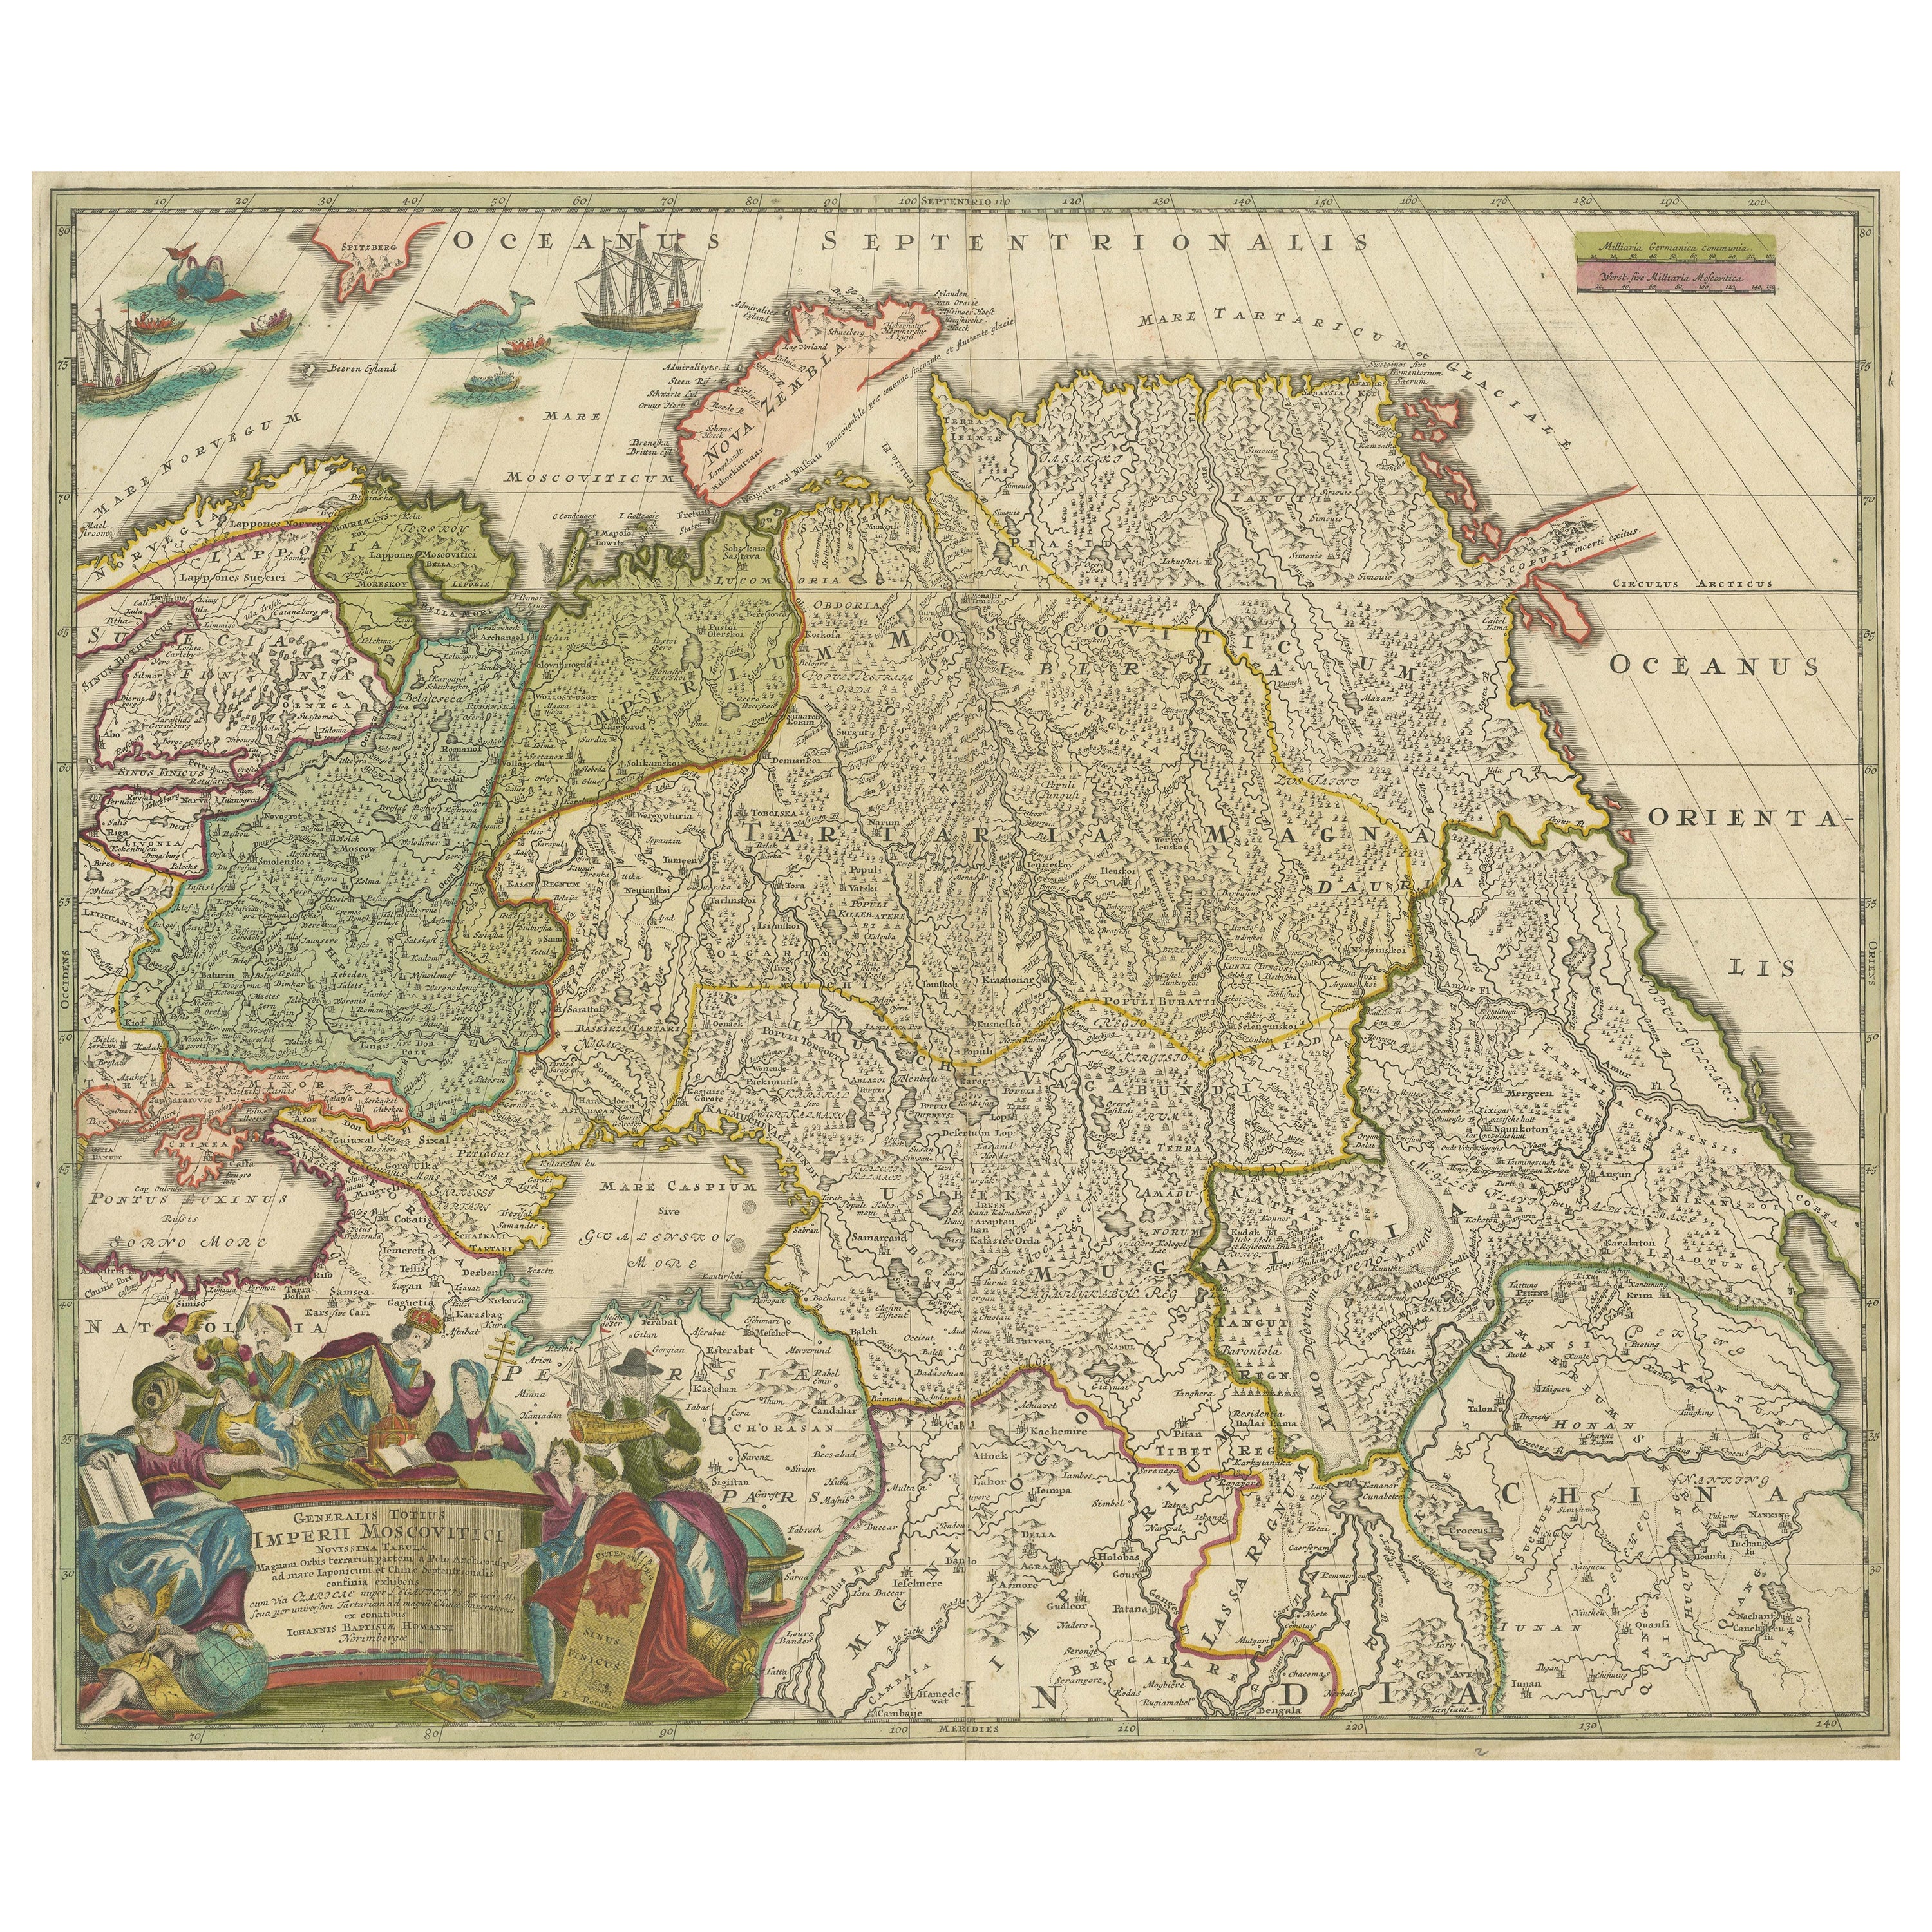 Antike Karte von Russland und Zentralasien, die Nordostasiatische Passage zeigt